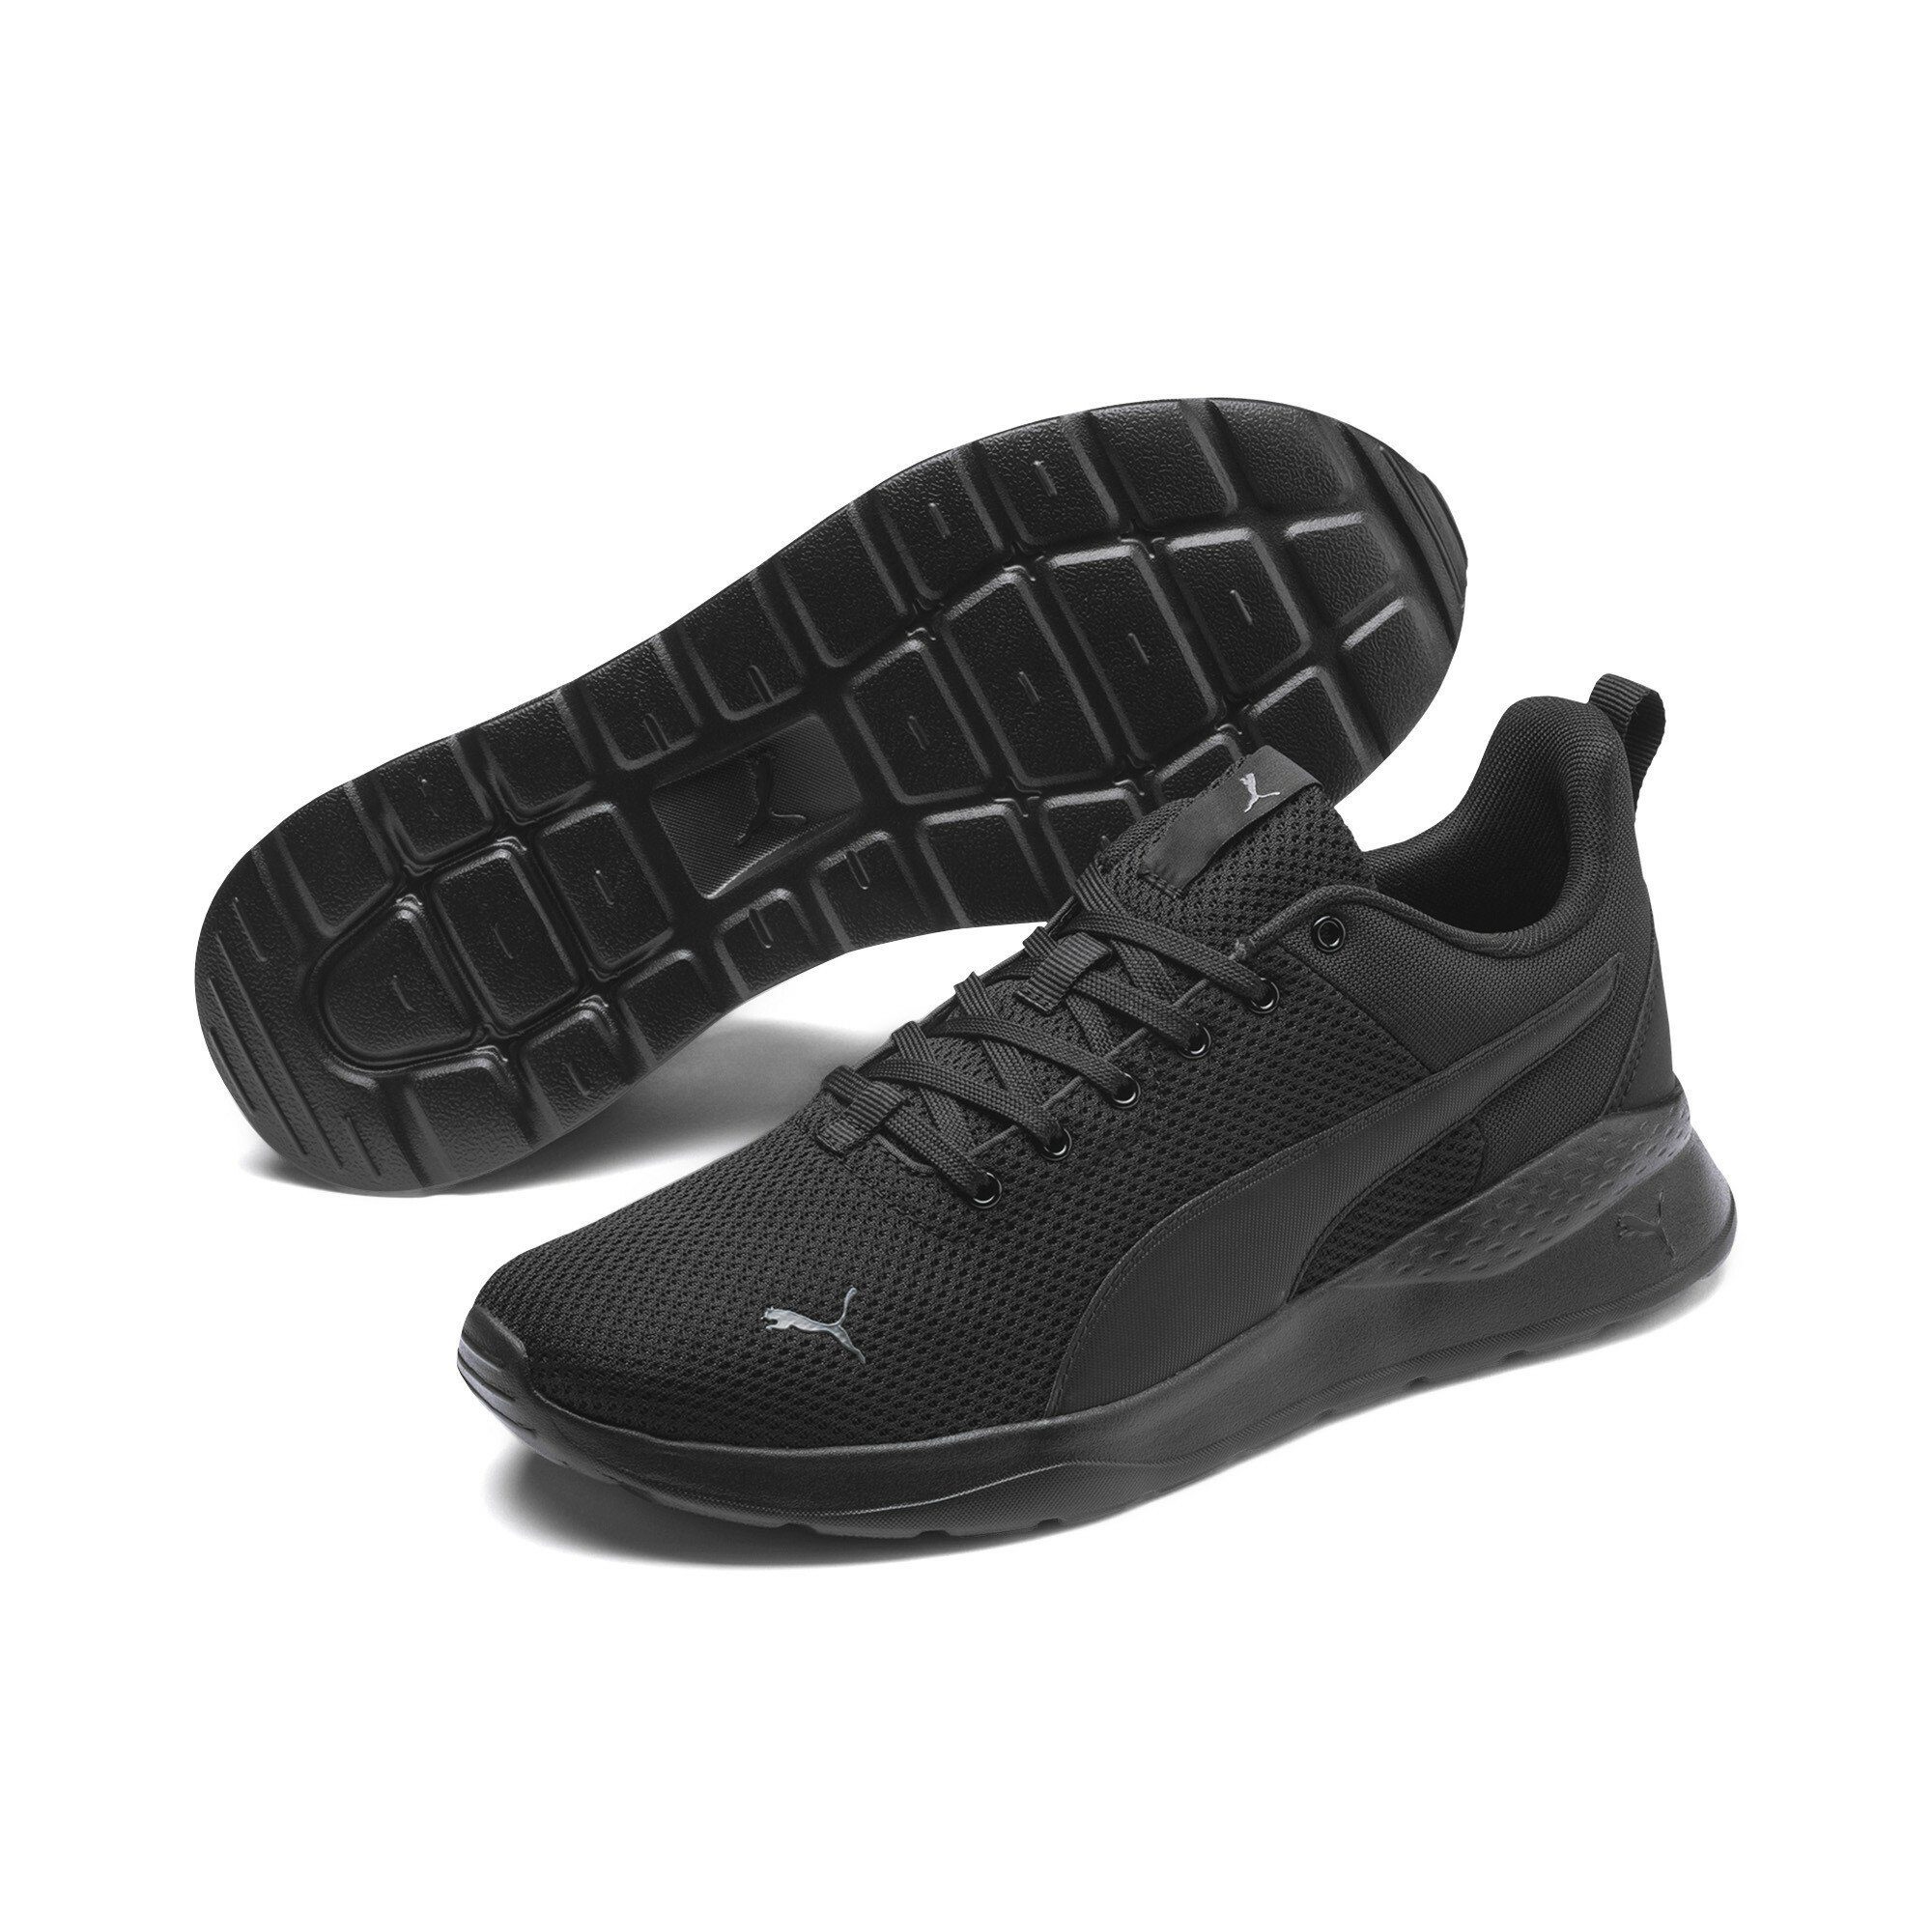 PUMA Schuhe online kaufen | OTTO